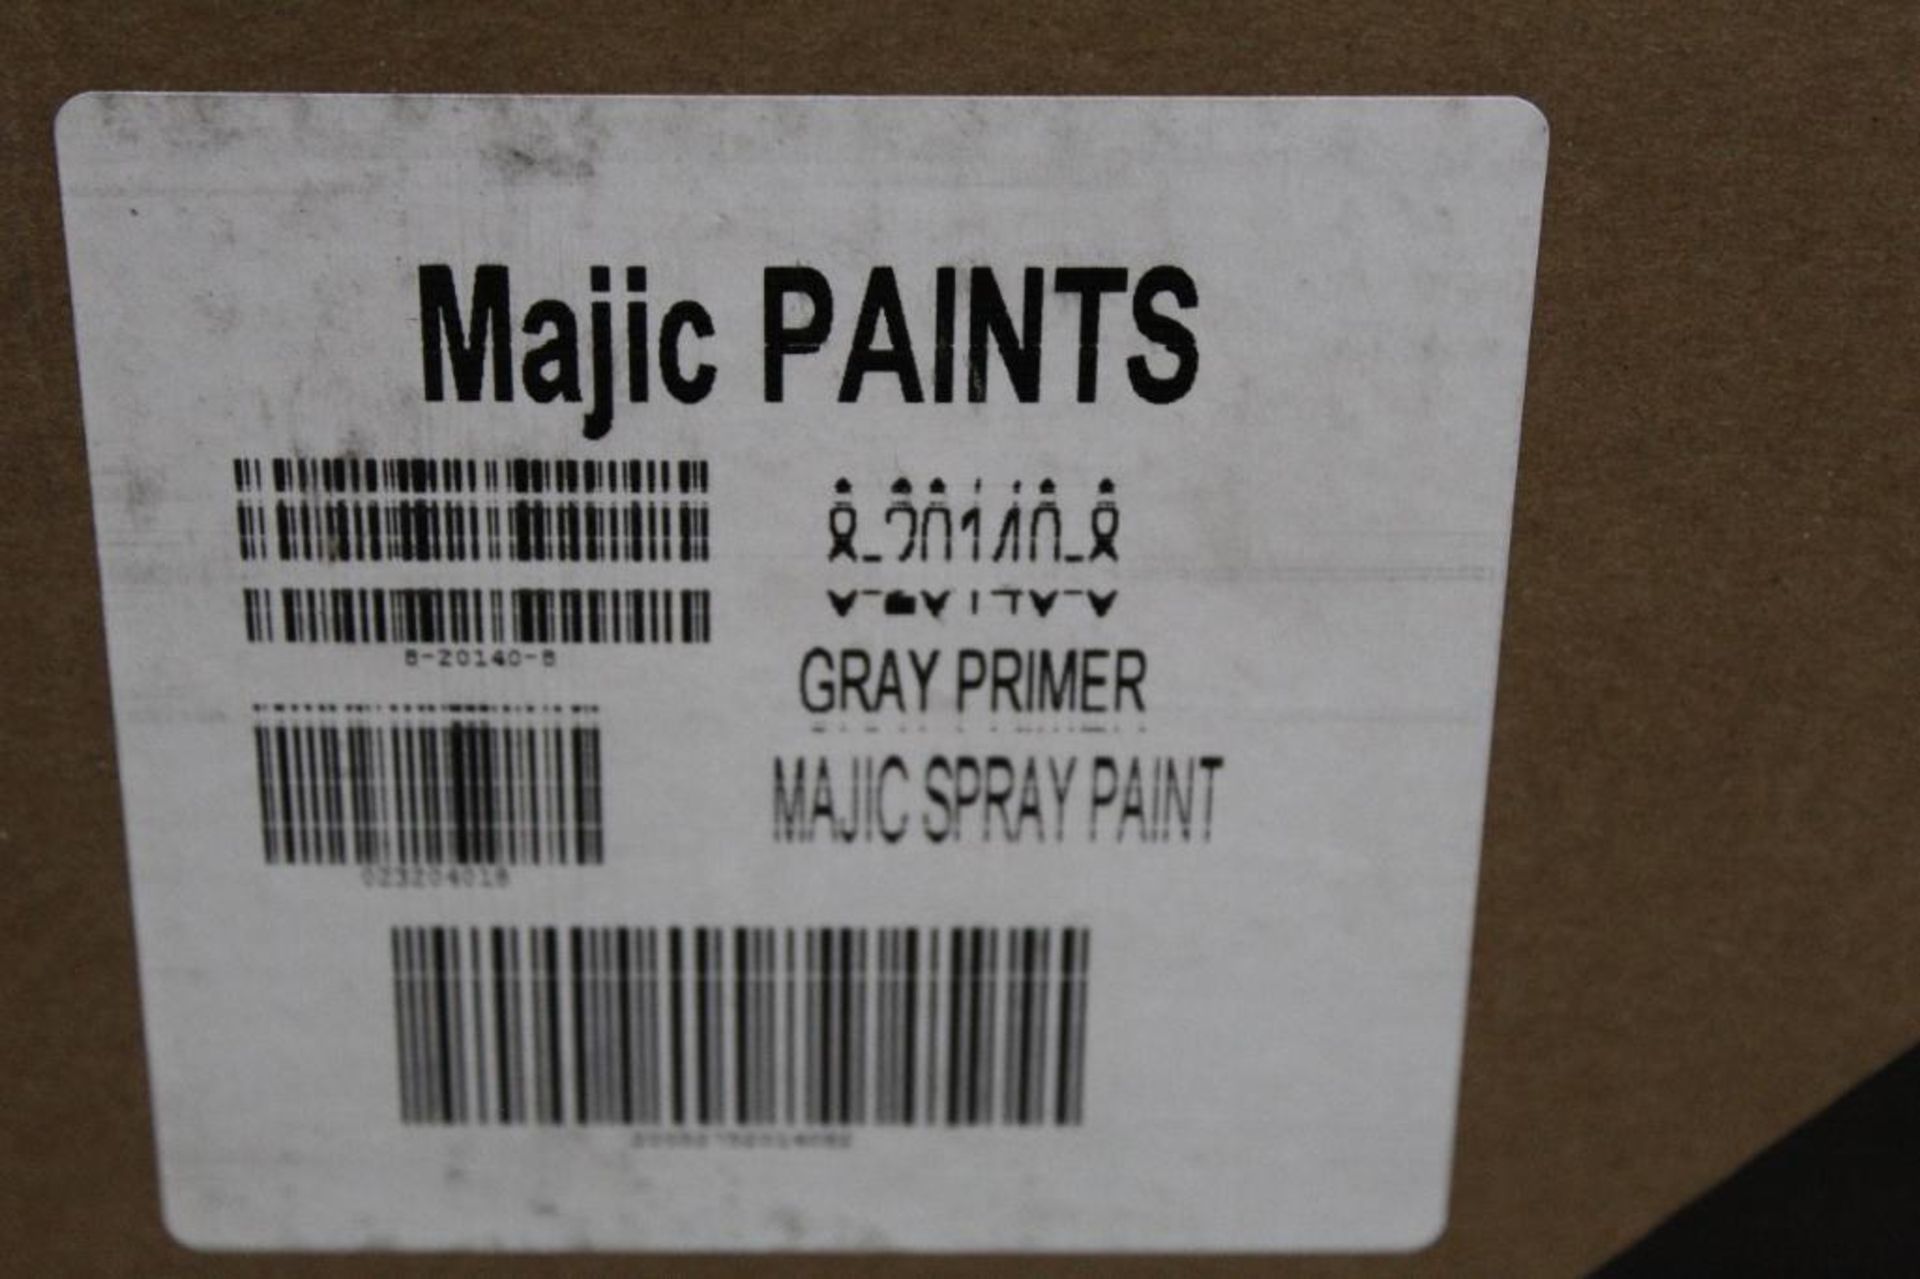 Lot of (12) Cases (6 Per Case) of Mavic Paints Gray Primer Spray Paint Product # 8-20140-8 - Bild 3 aus 3